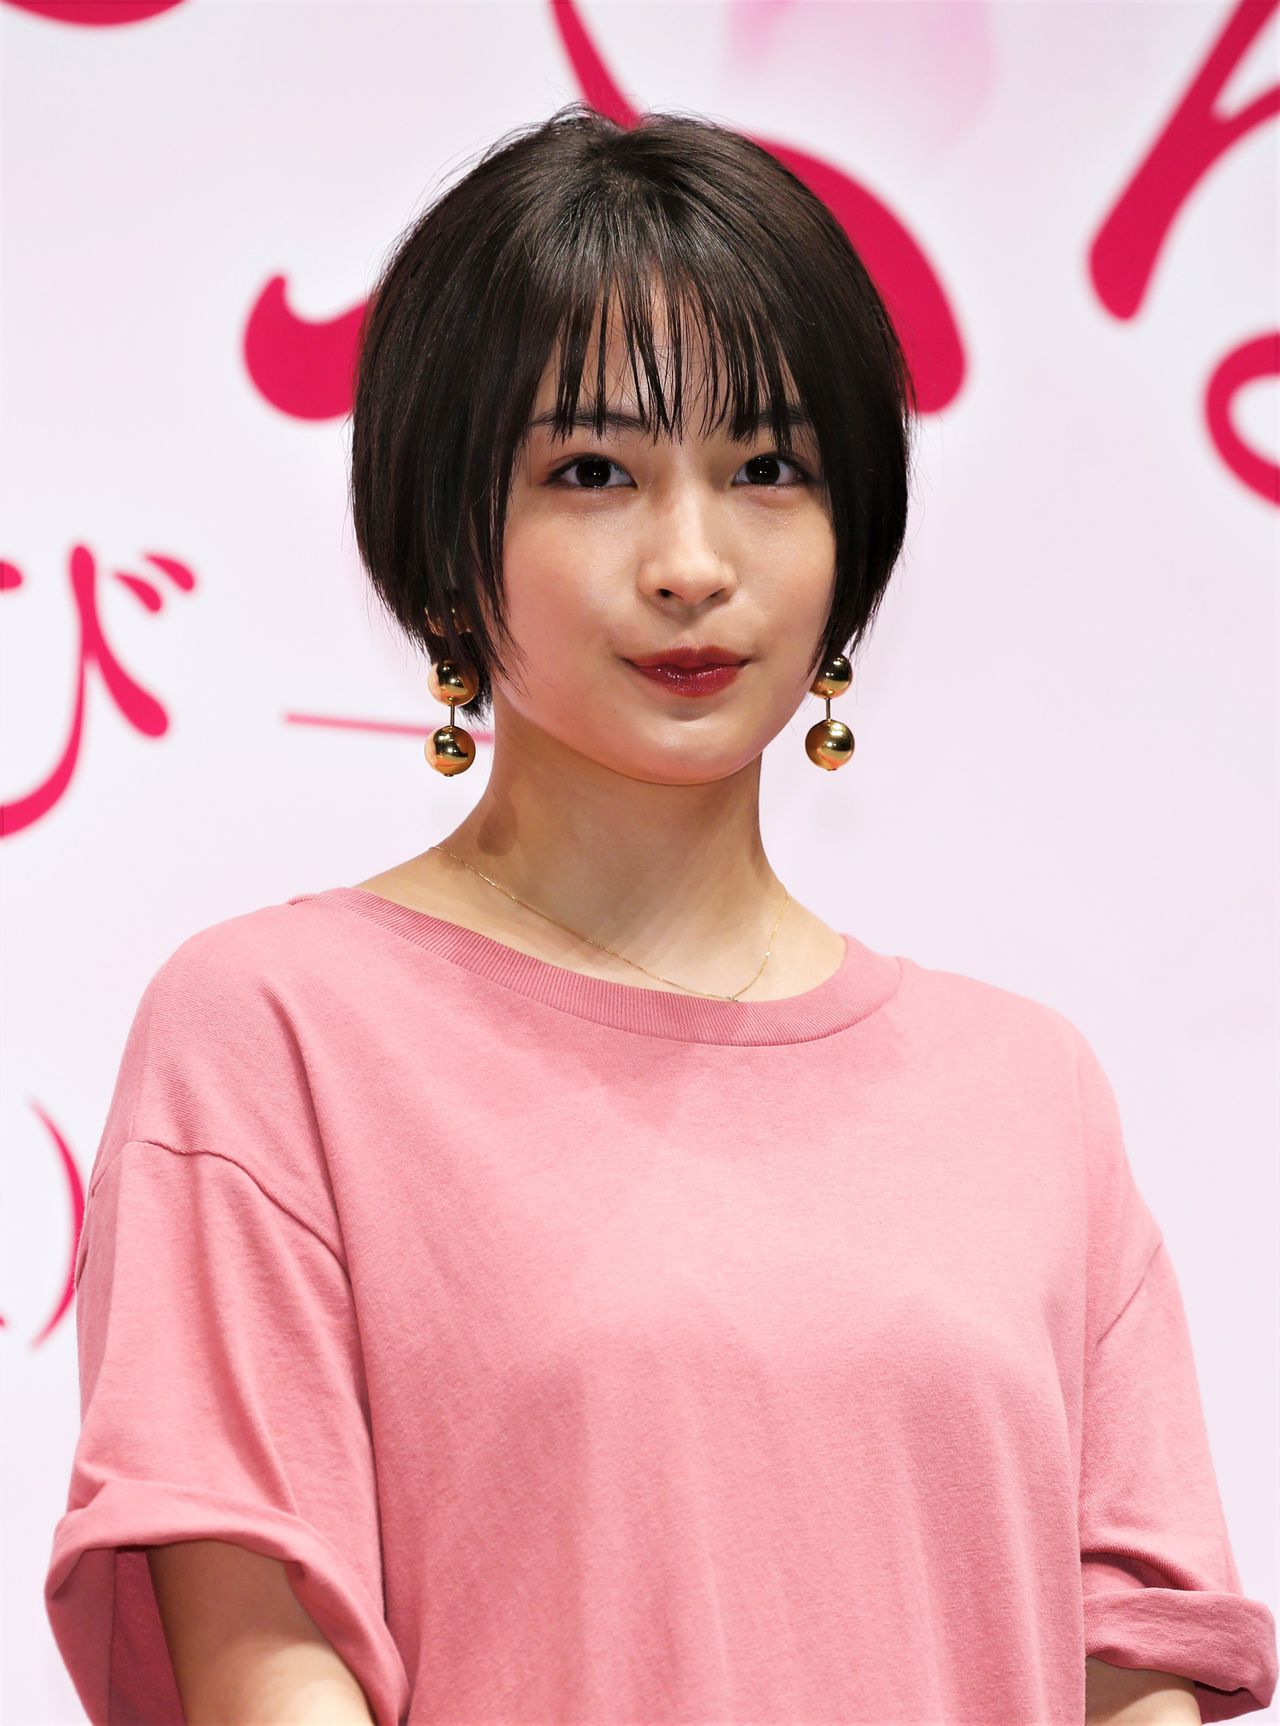 Trois films adaptés du manga ont été produits de 2016 à 2018, où l'actrice Hirose Suzu en a été l'héroïne. Ici, elle apparaît lors d'un événement en avant-première le 6 mars 2018 pour le film Chihayafuru : Musubi. (© Jiji)